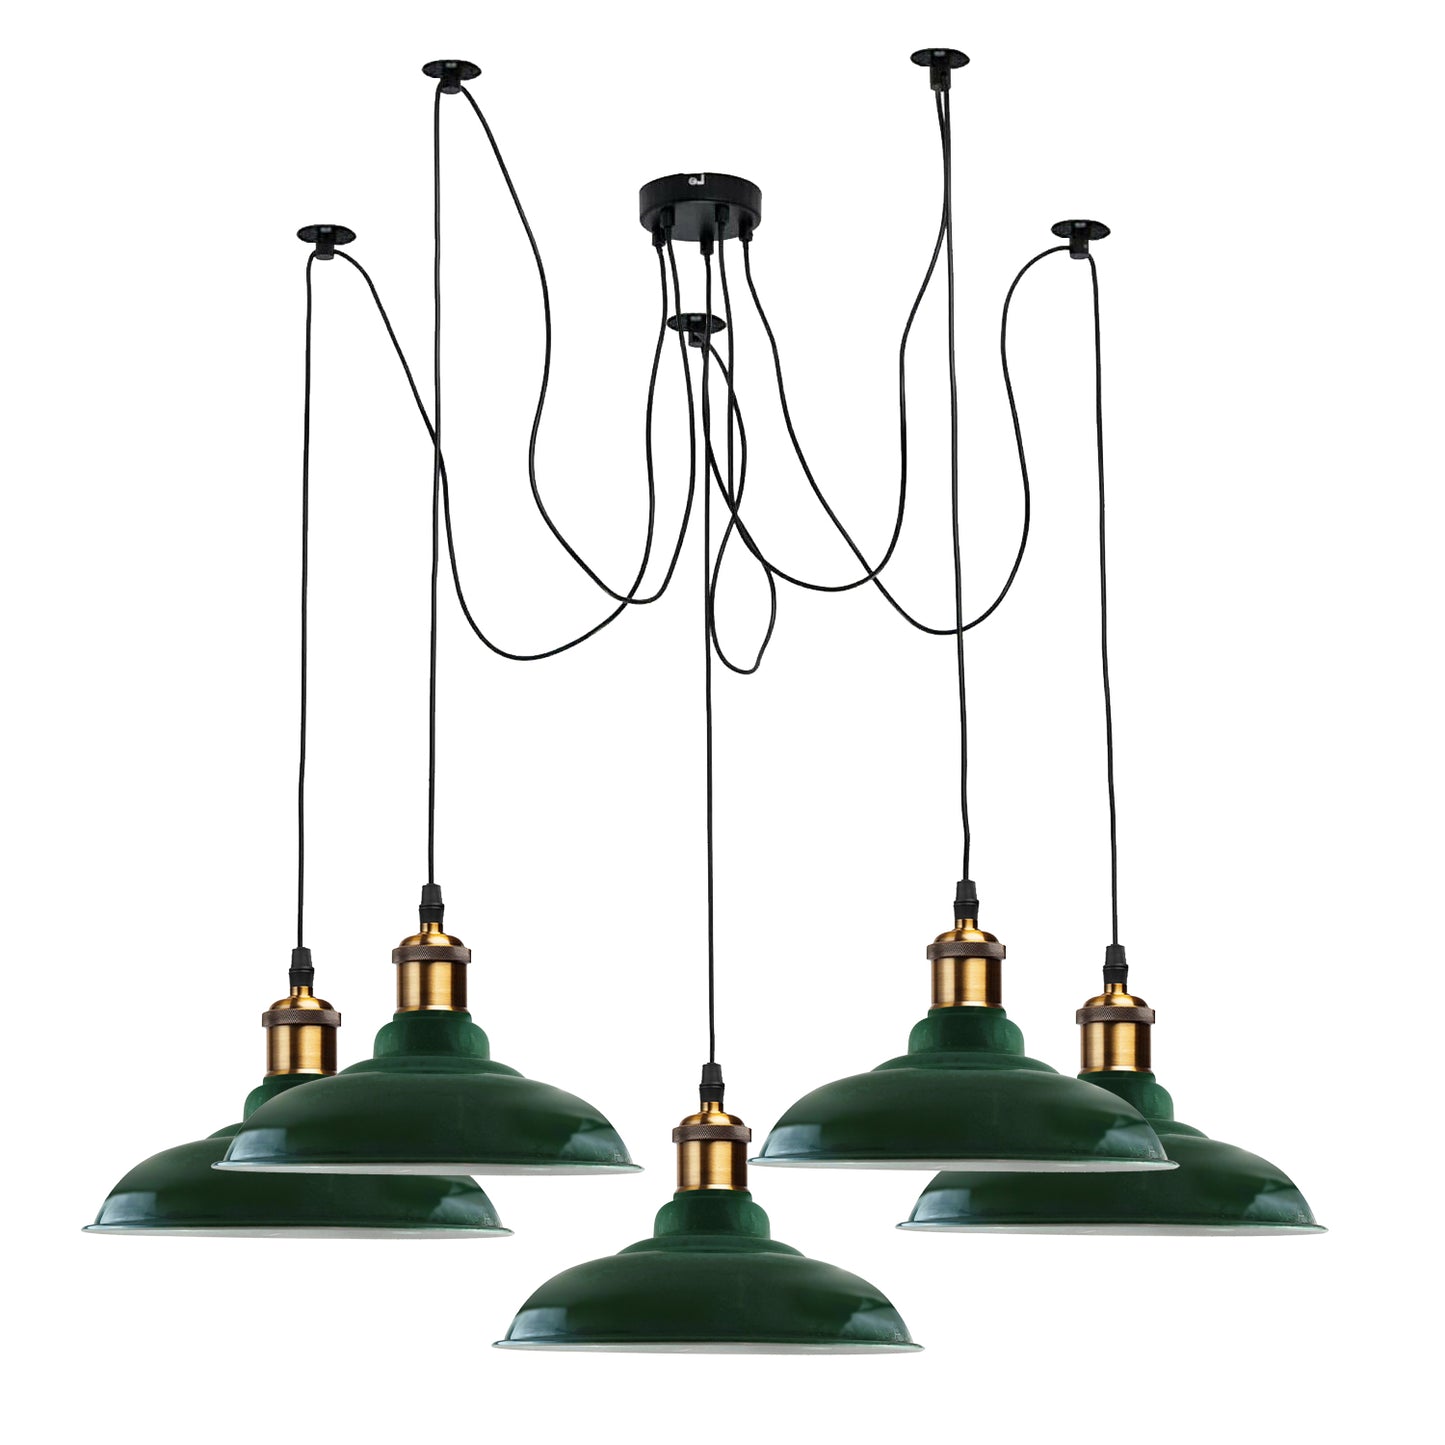 5 Way Vintage Chandelier Spider Ceiling Indoor Lamp Fixture Metal Curvy Shade Green~2215